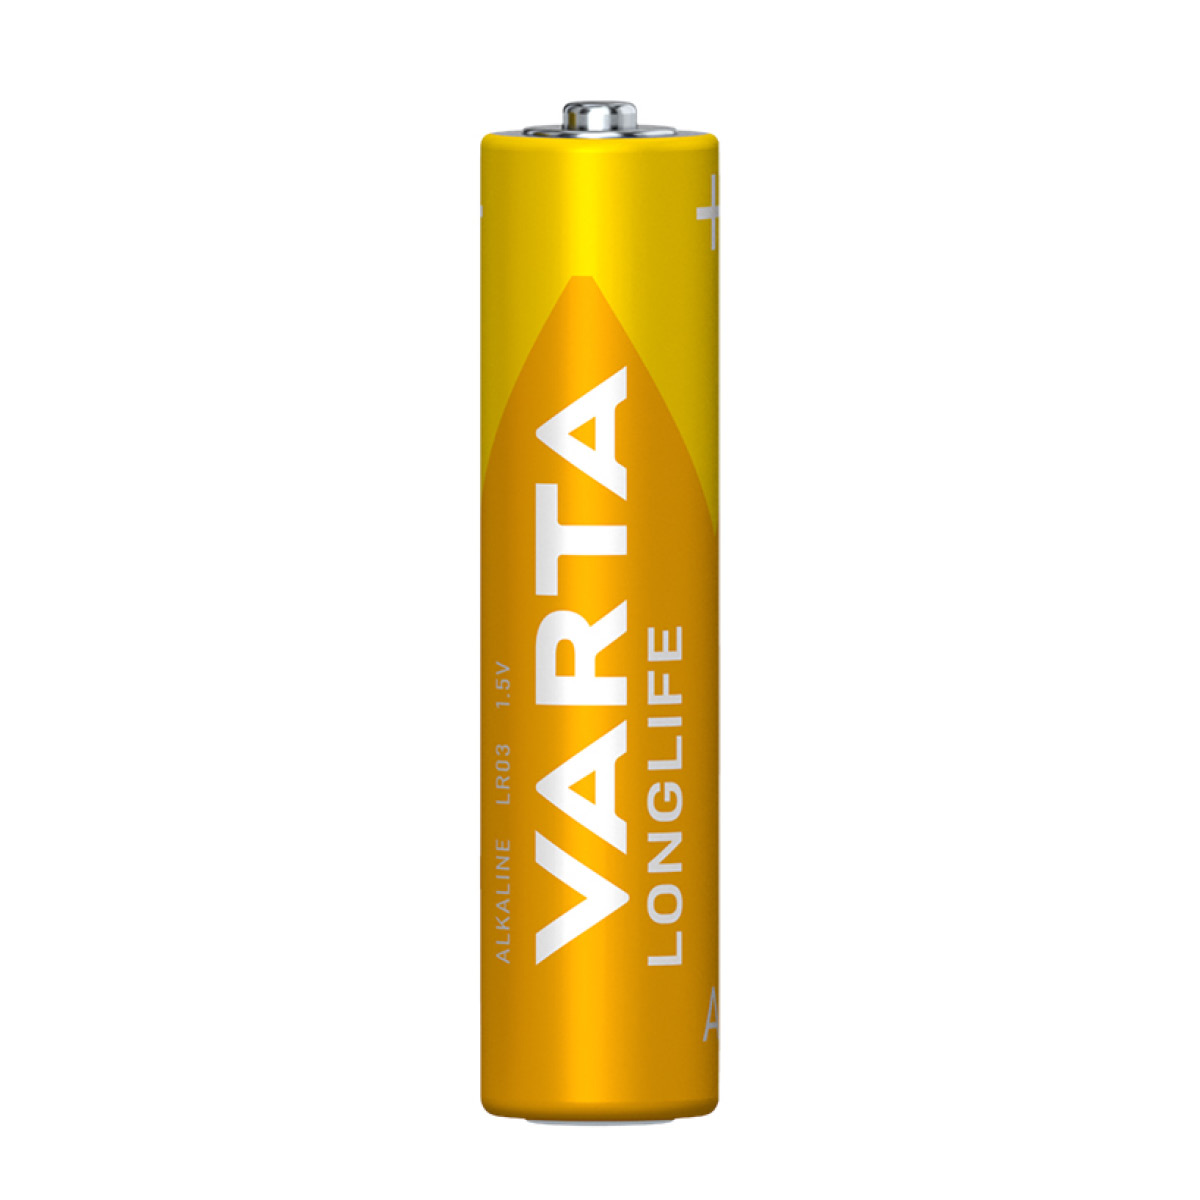 Varta Longlife Micro AAA 4er Batterien